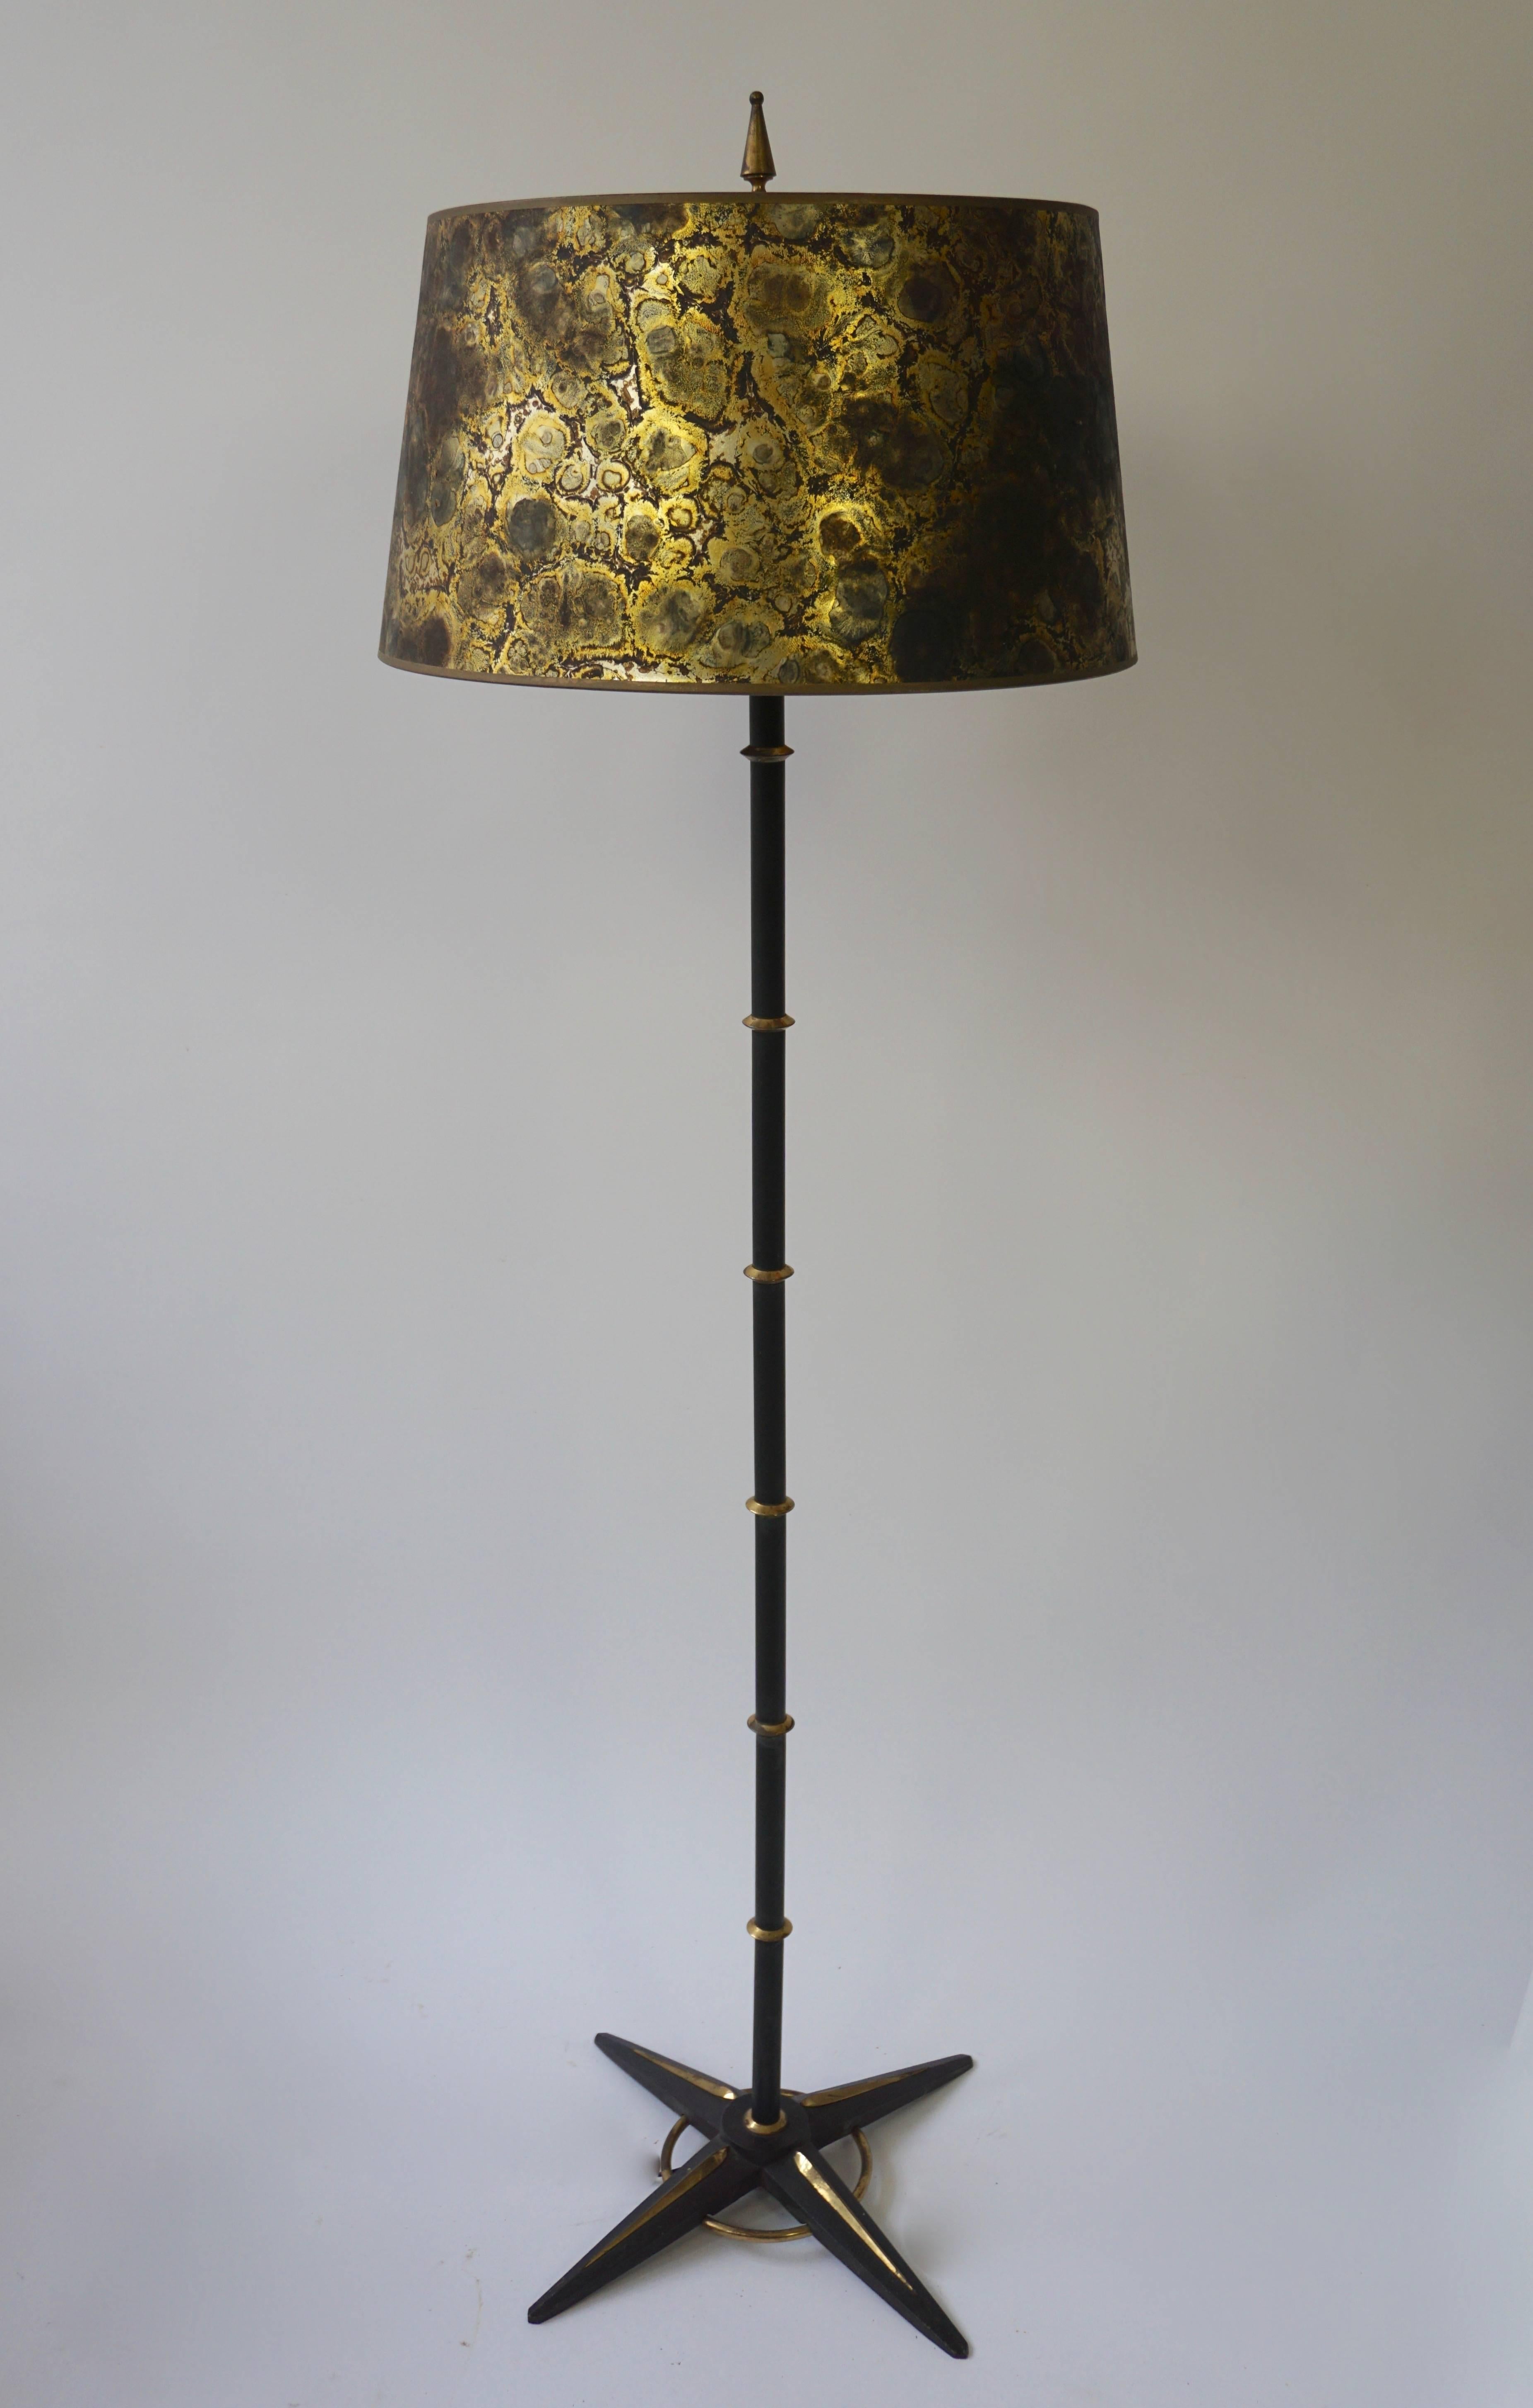 Schöne Stehlampe aus schwarzem Metall und Messing aus den 1950er Jahren mit goldfarbenem Lampenschirm.
Maße: Höhe mit Schirm 140 cm.
Durchmesser des Schirms 43 cm.
Höhe Farbton 35 cm.